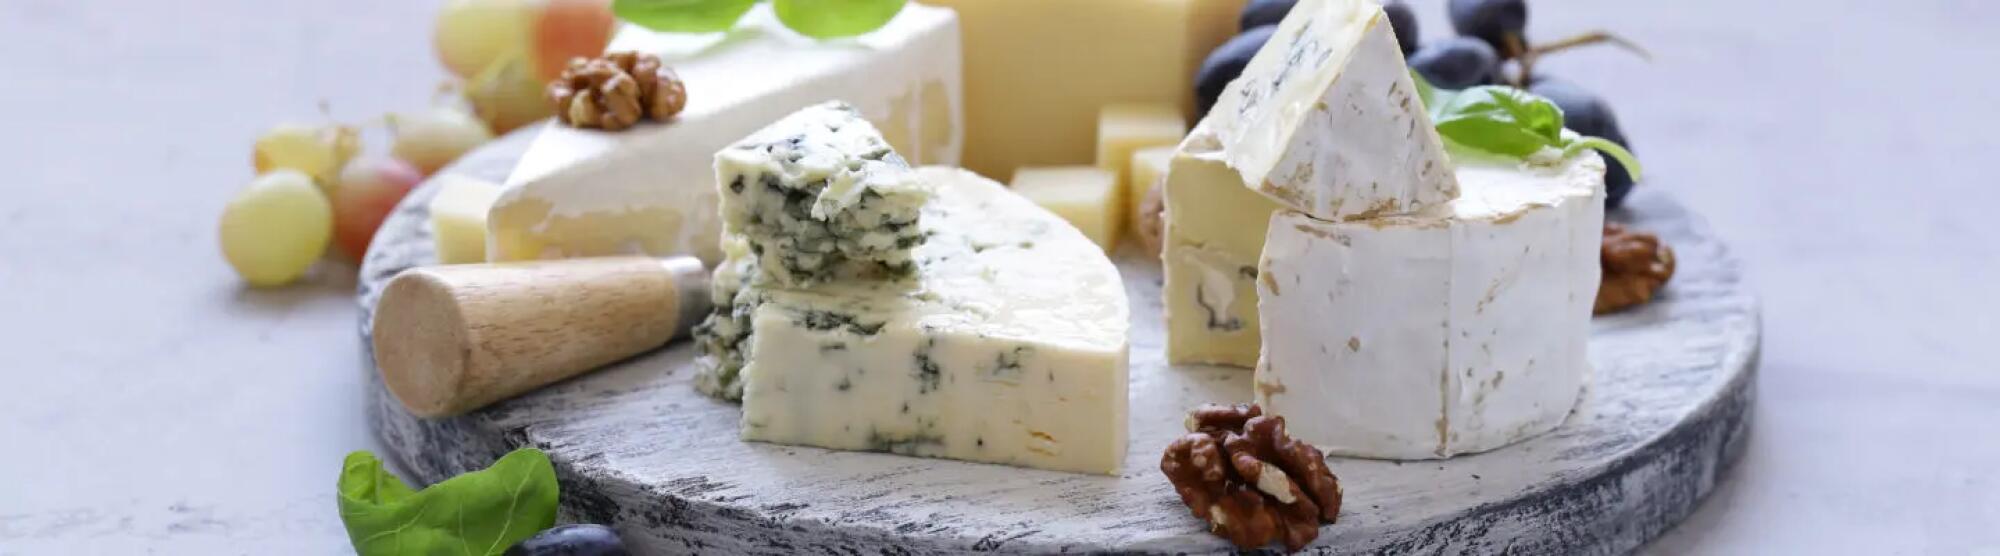 Recette : Idée de plateau de fromages pour Pâques